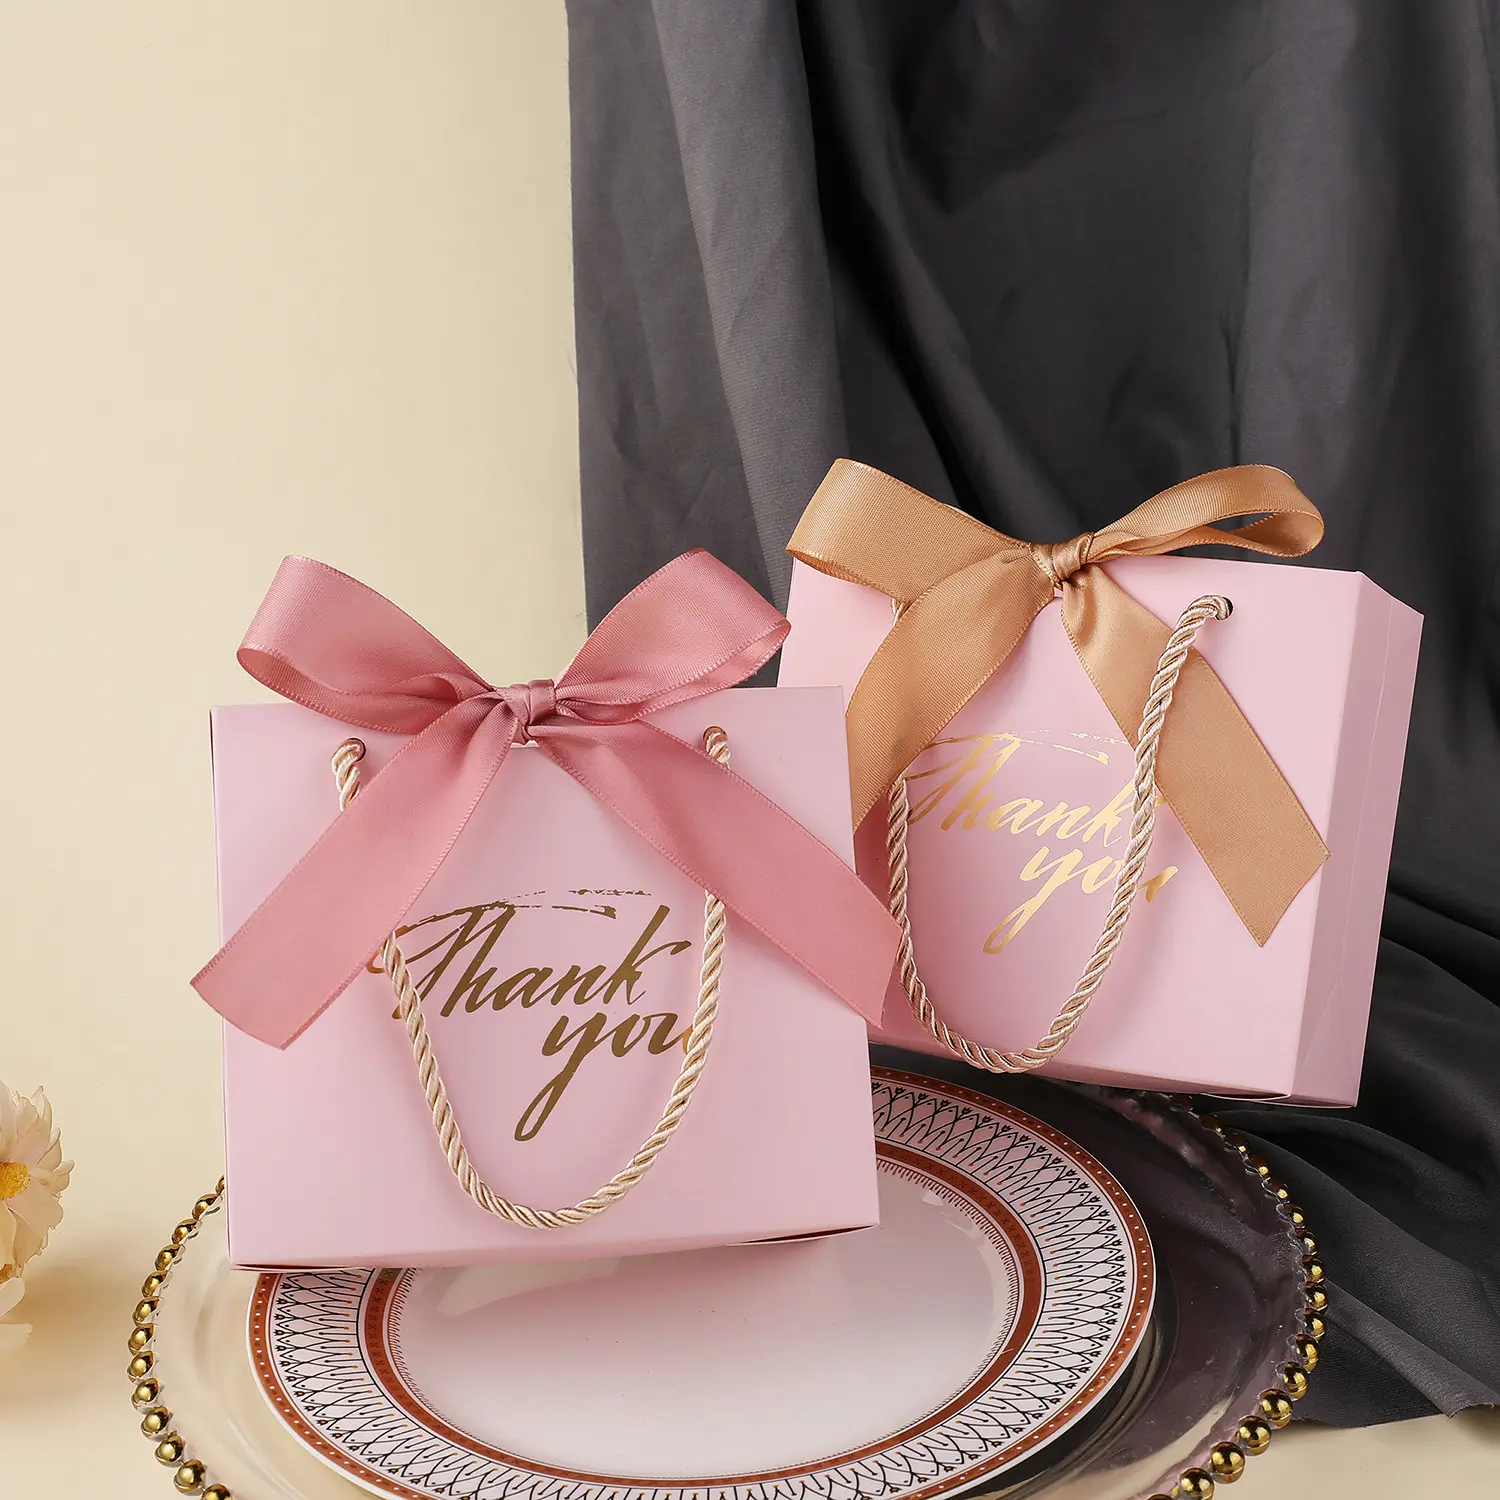 ורוד הזמנה למסיבת יוקרה טובות חתונה מתוקה שוקולד ממתקים נייר אריזה תיק יד שקית מתנה עם סרט